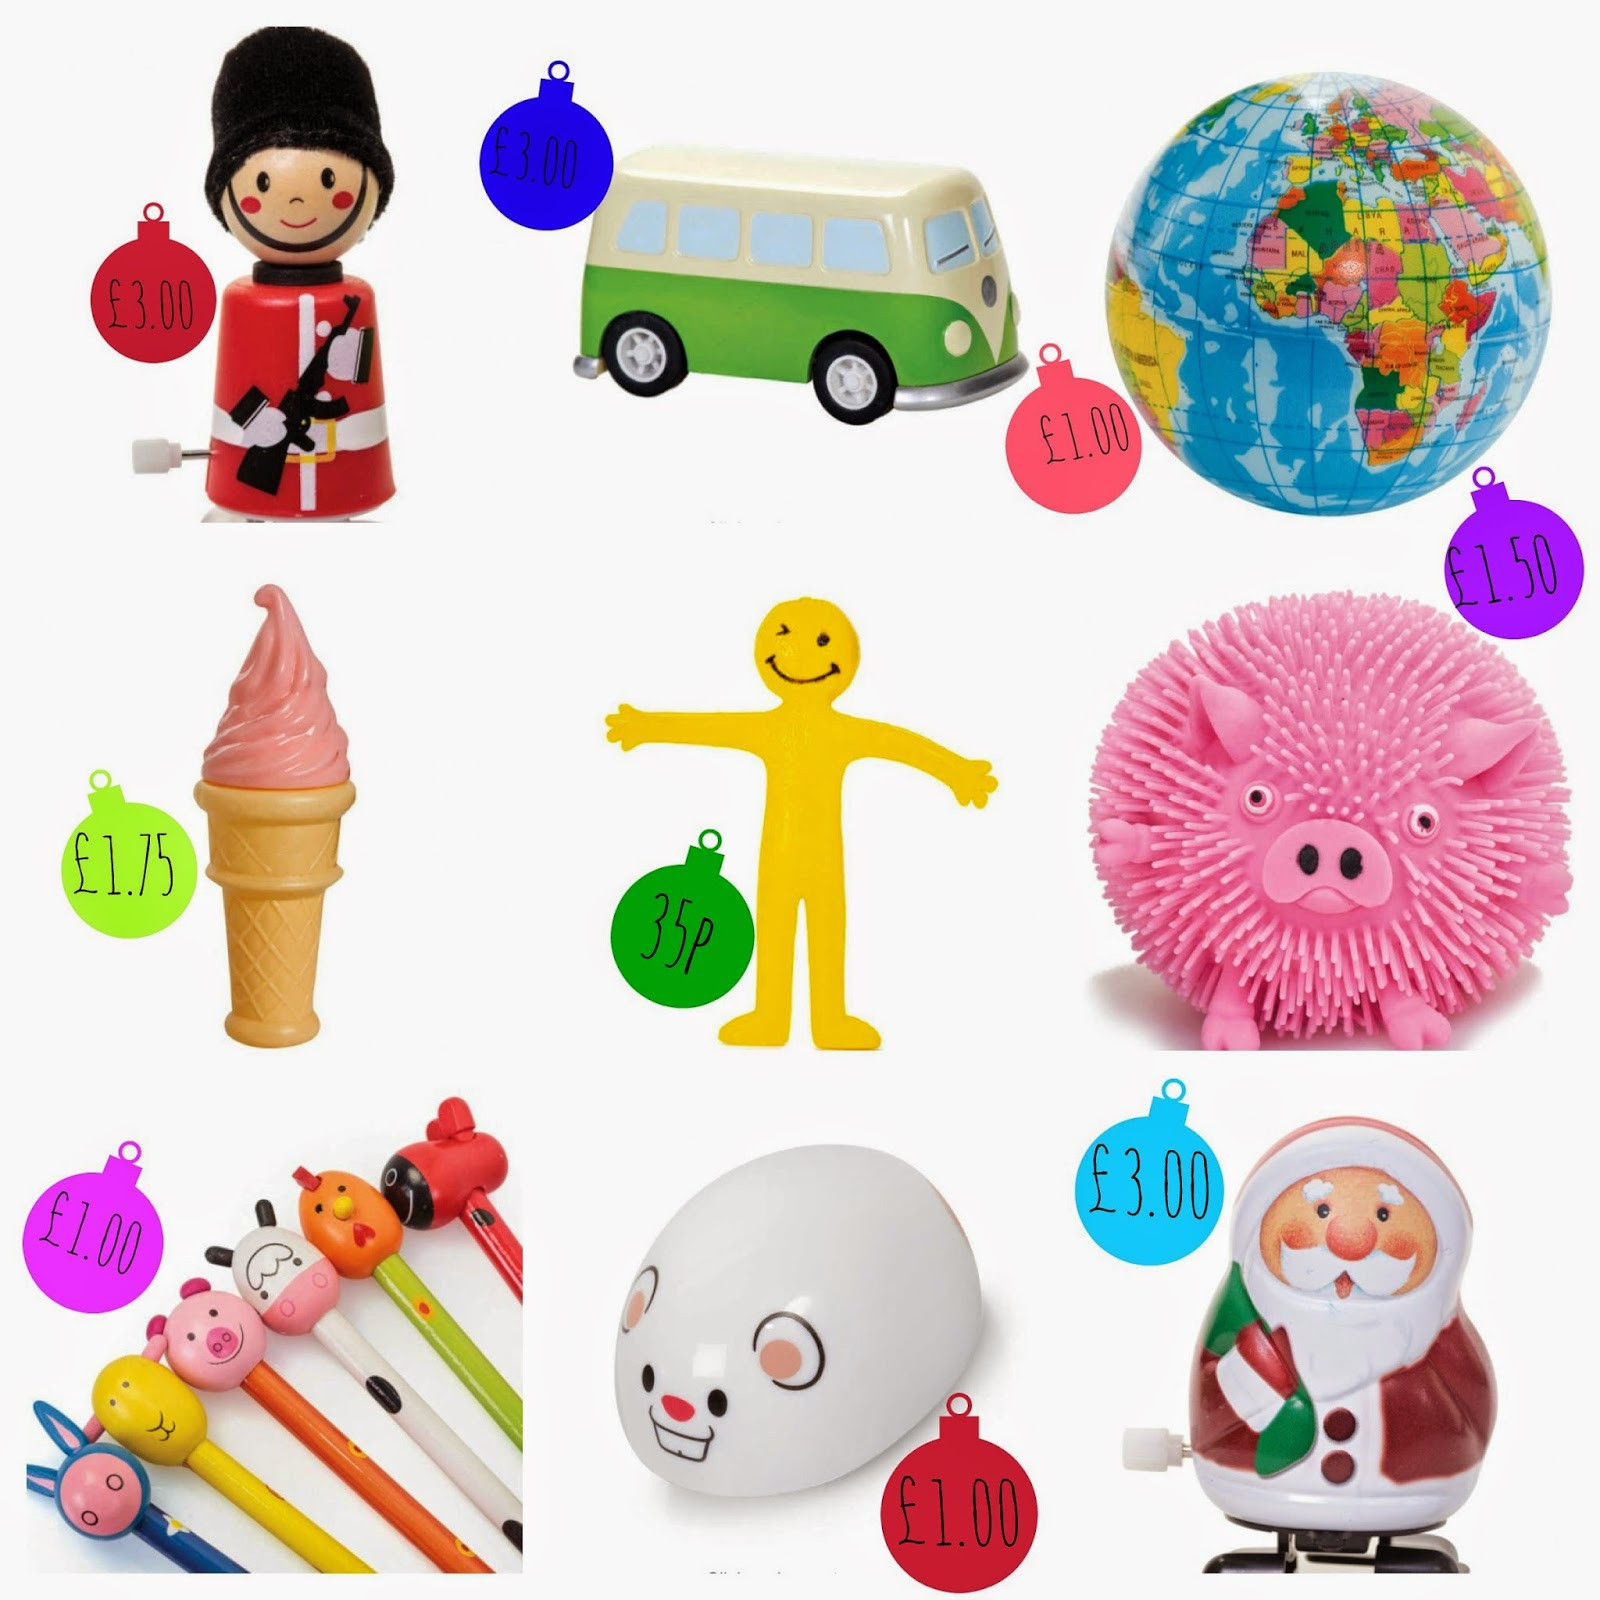 Best ideas about Advent Calendar Gift Ideas
. Save or Pin Christmas Advent Calendar Gift Ideas Now.